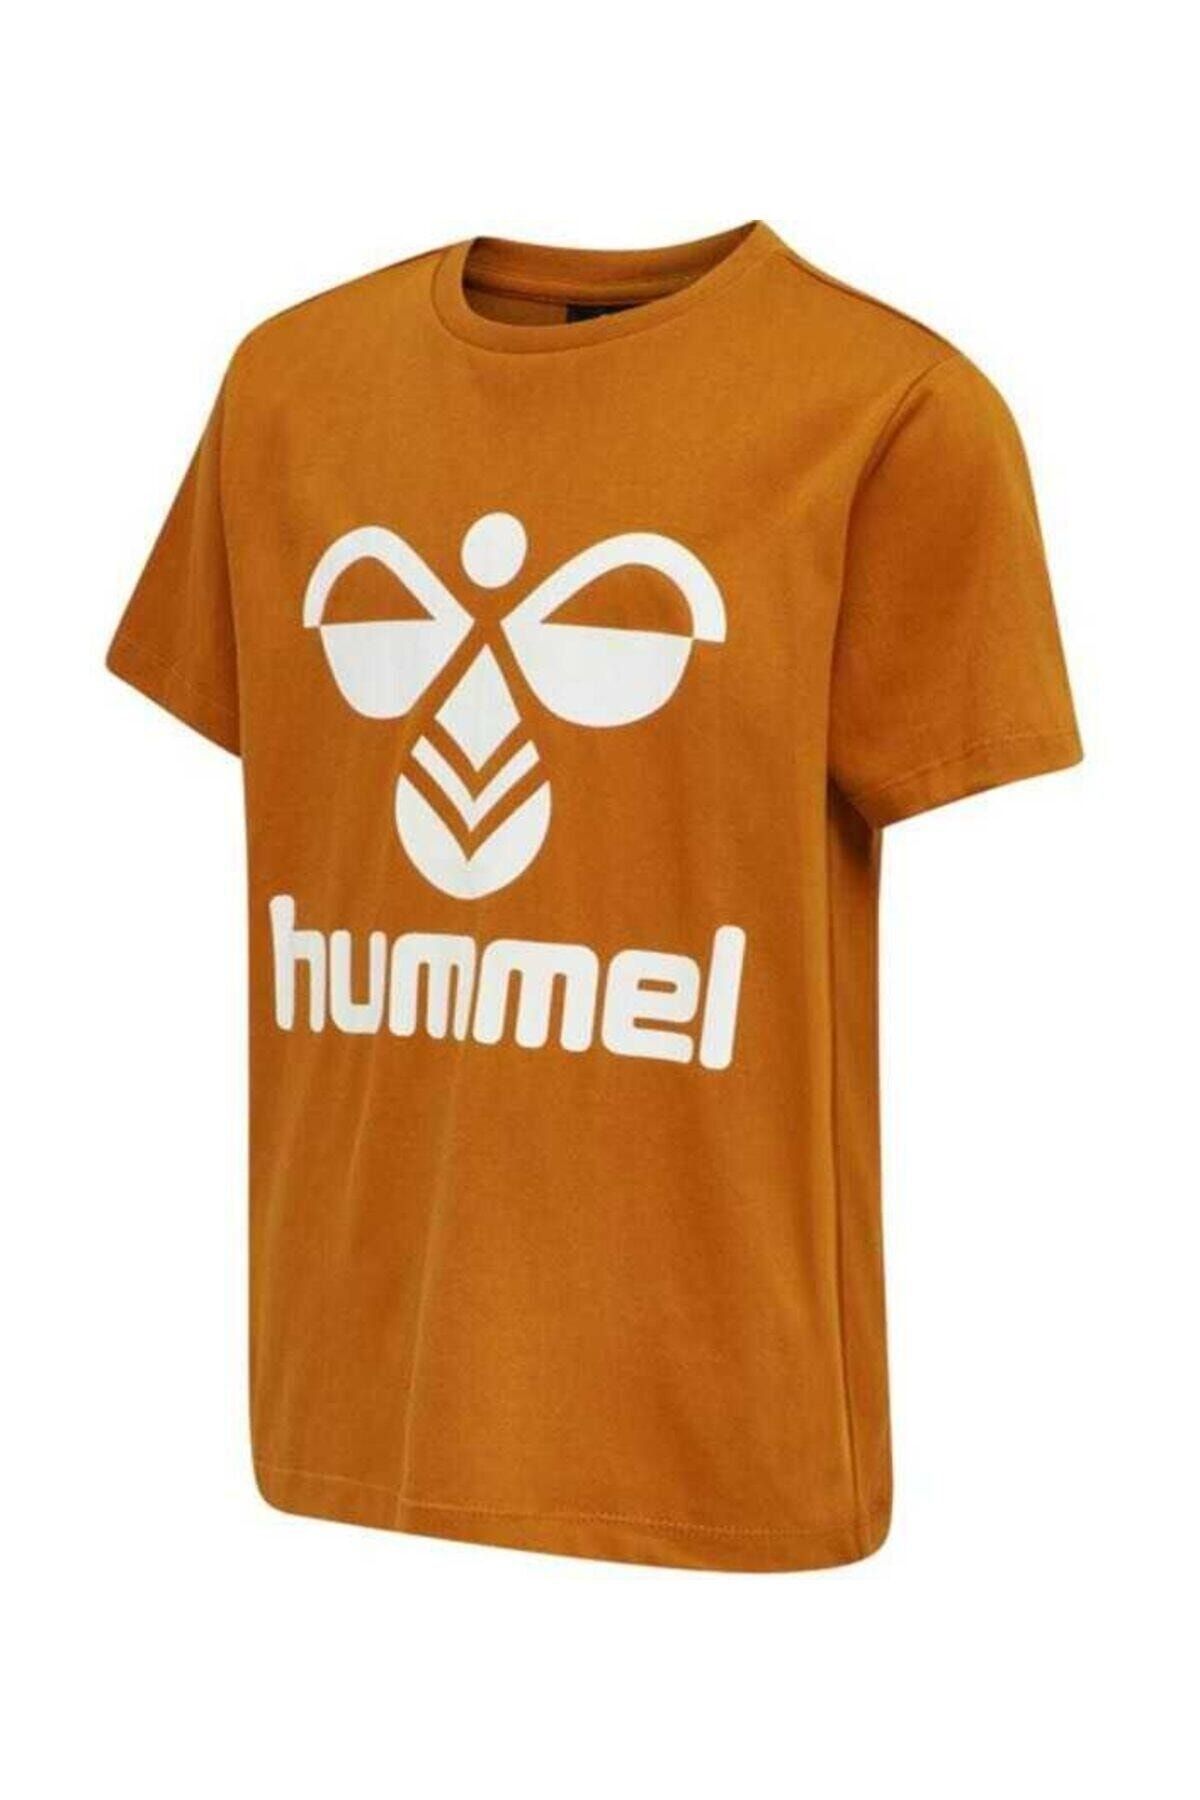 hummel Hmltres T-shırt S/s